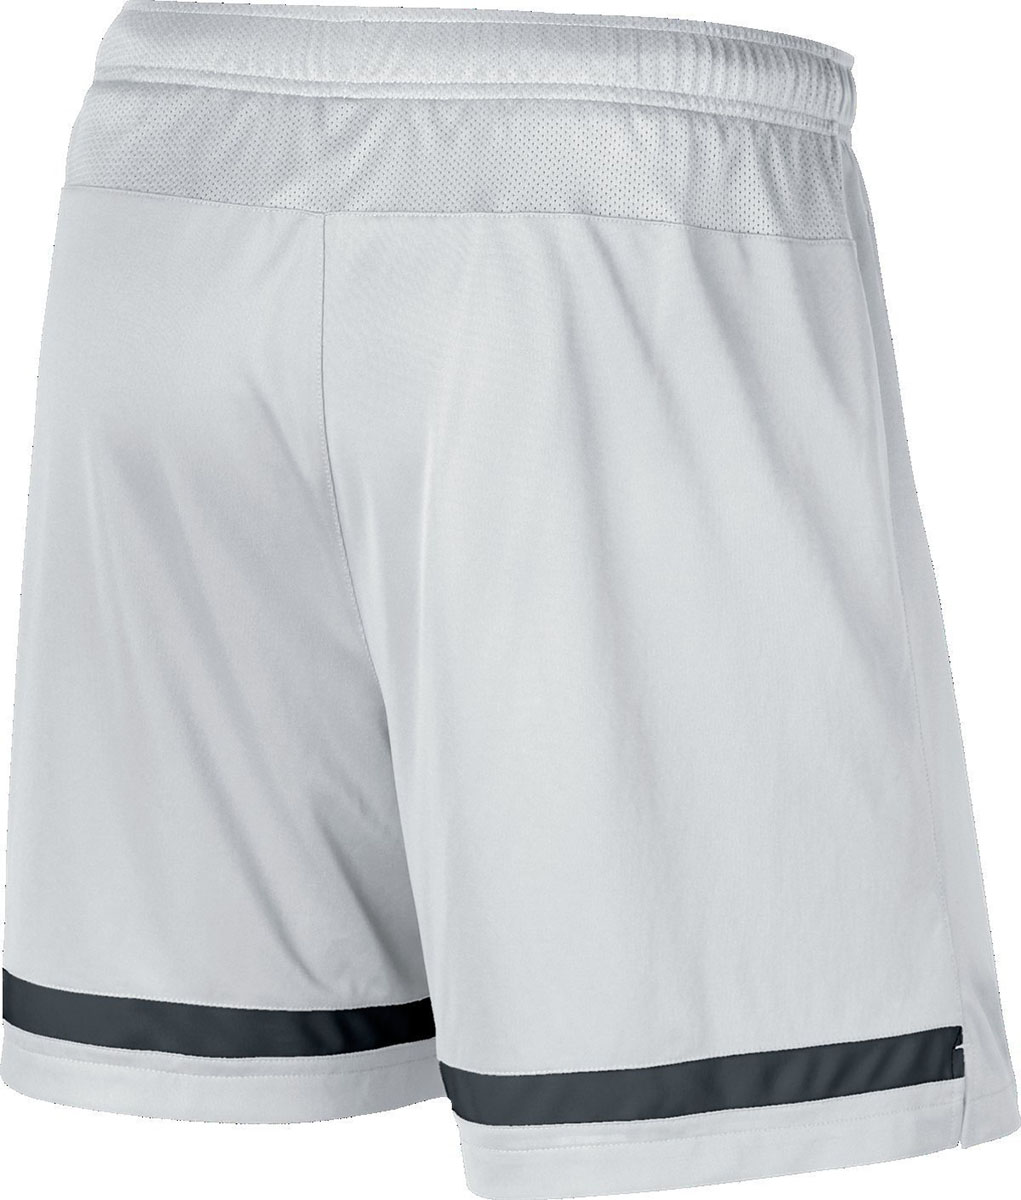 Children´s soccer shorts